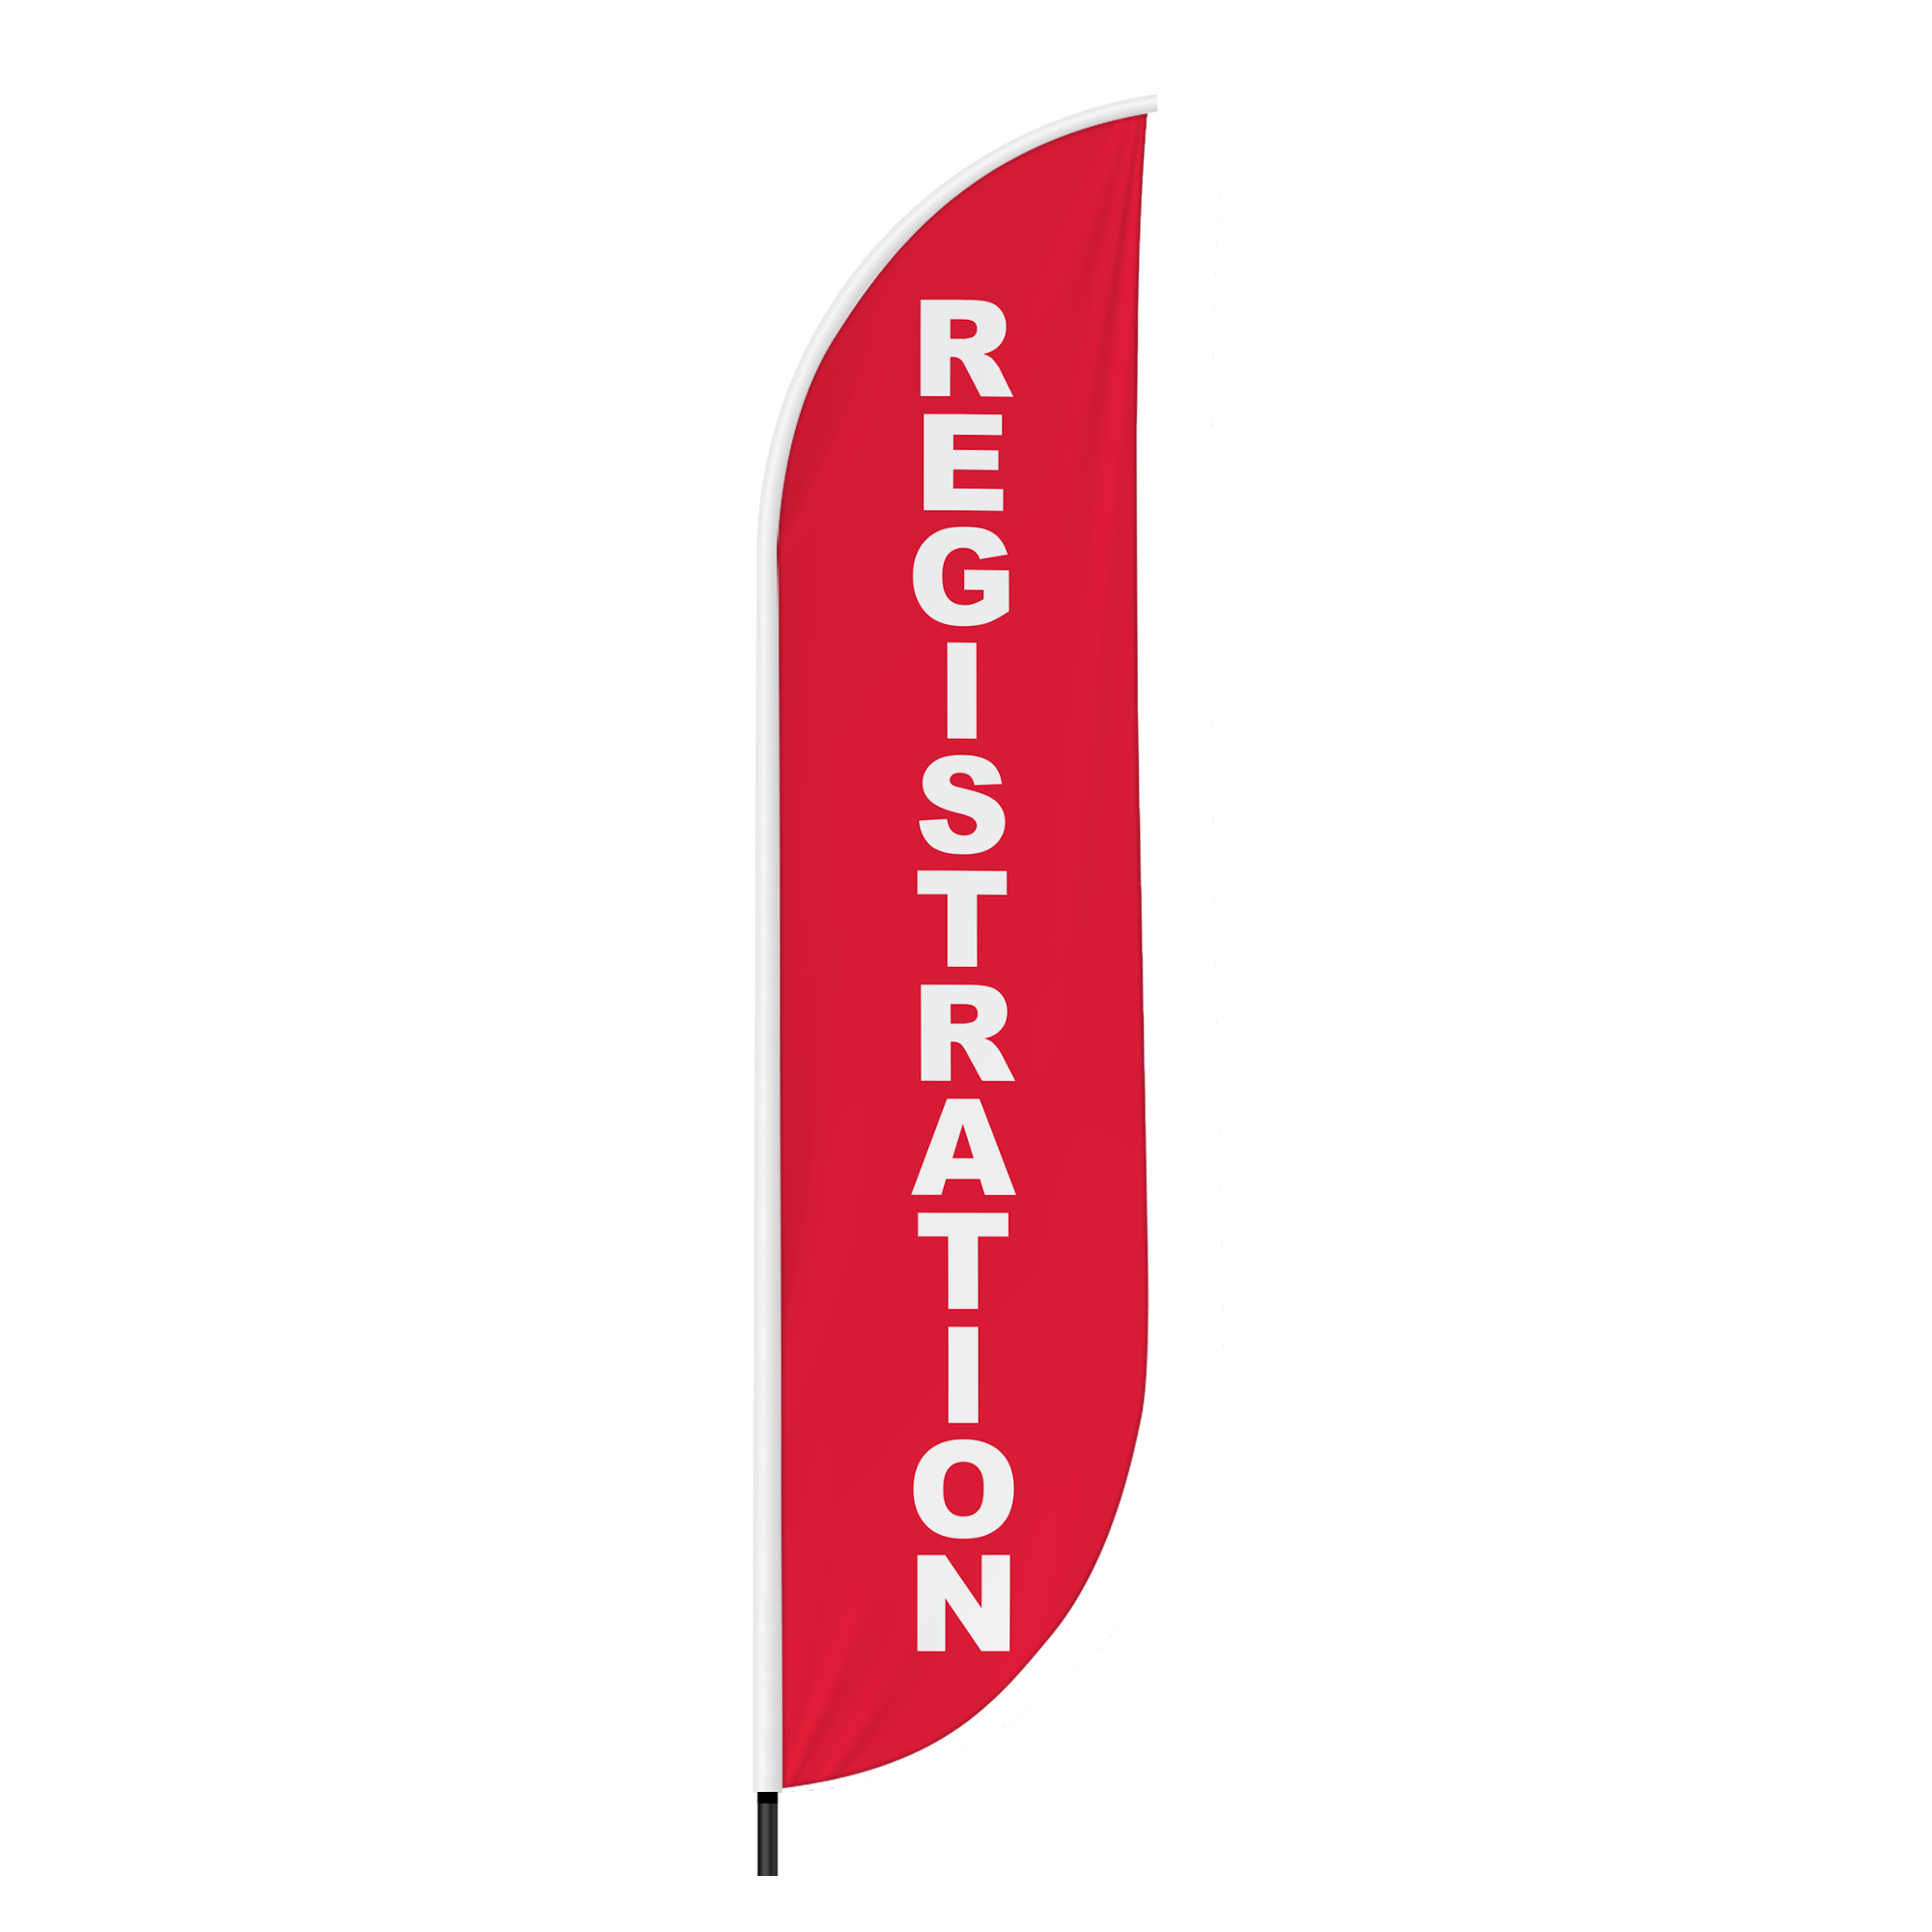 Registration 2 Feather Flag / Swooper Flag